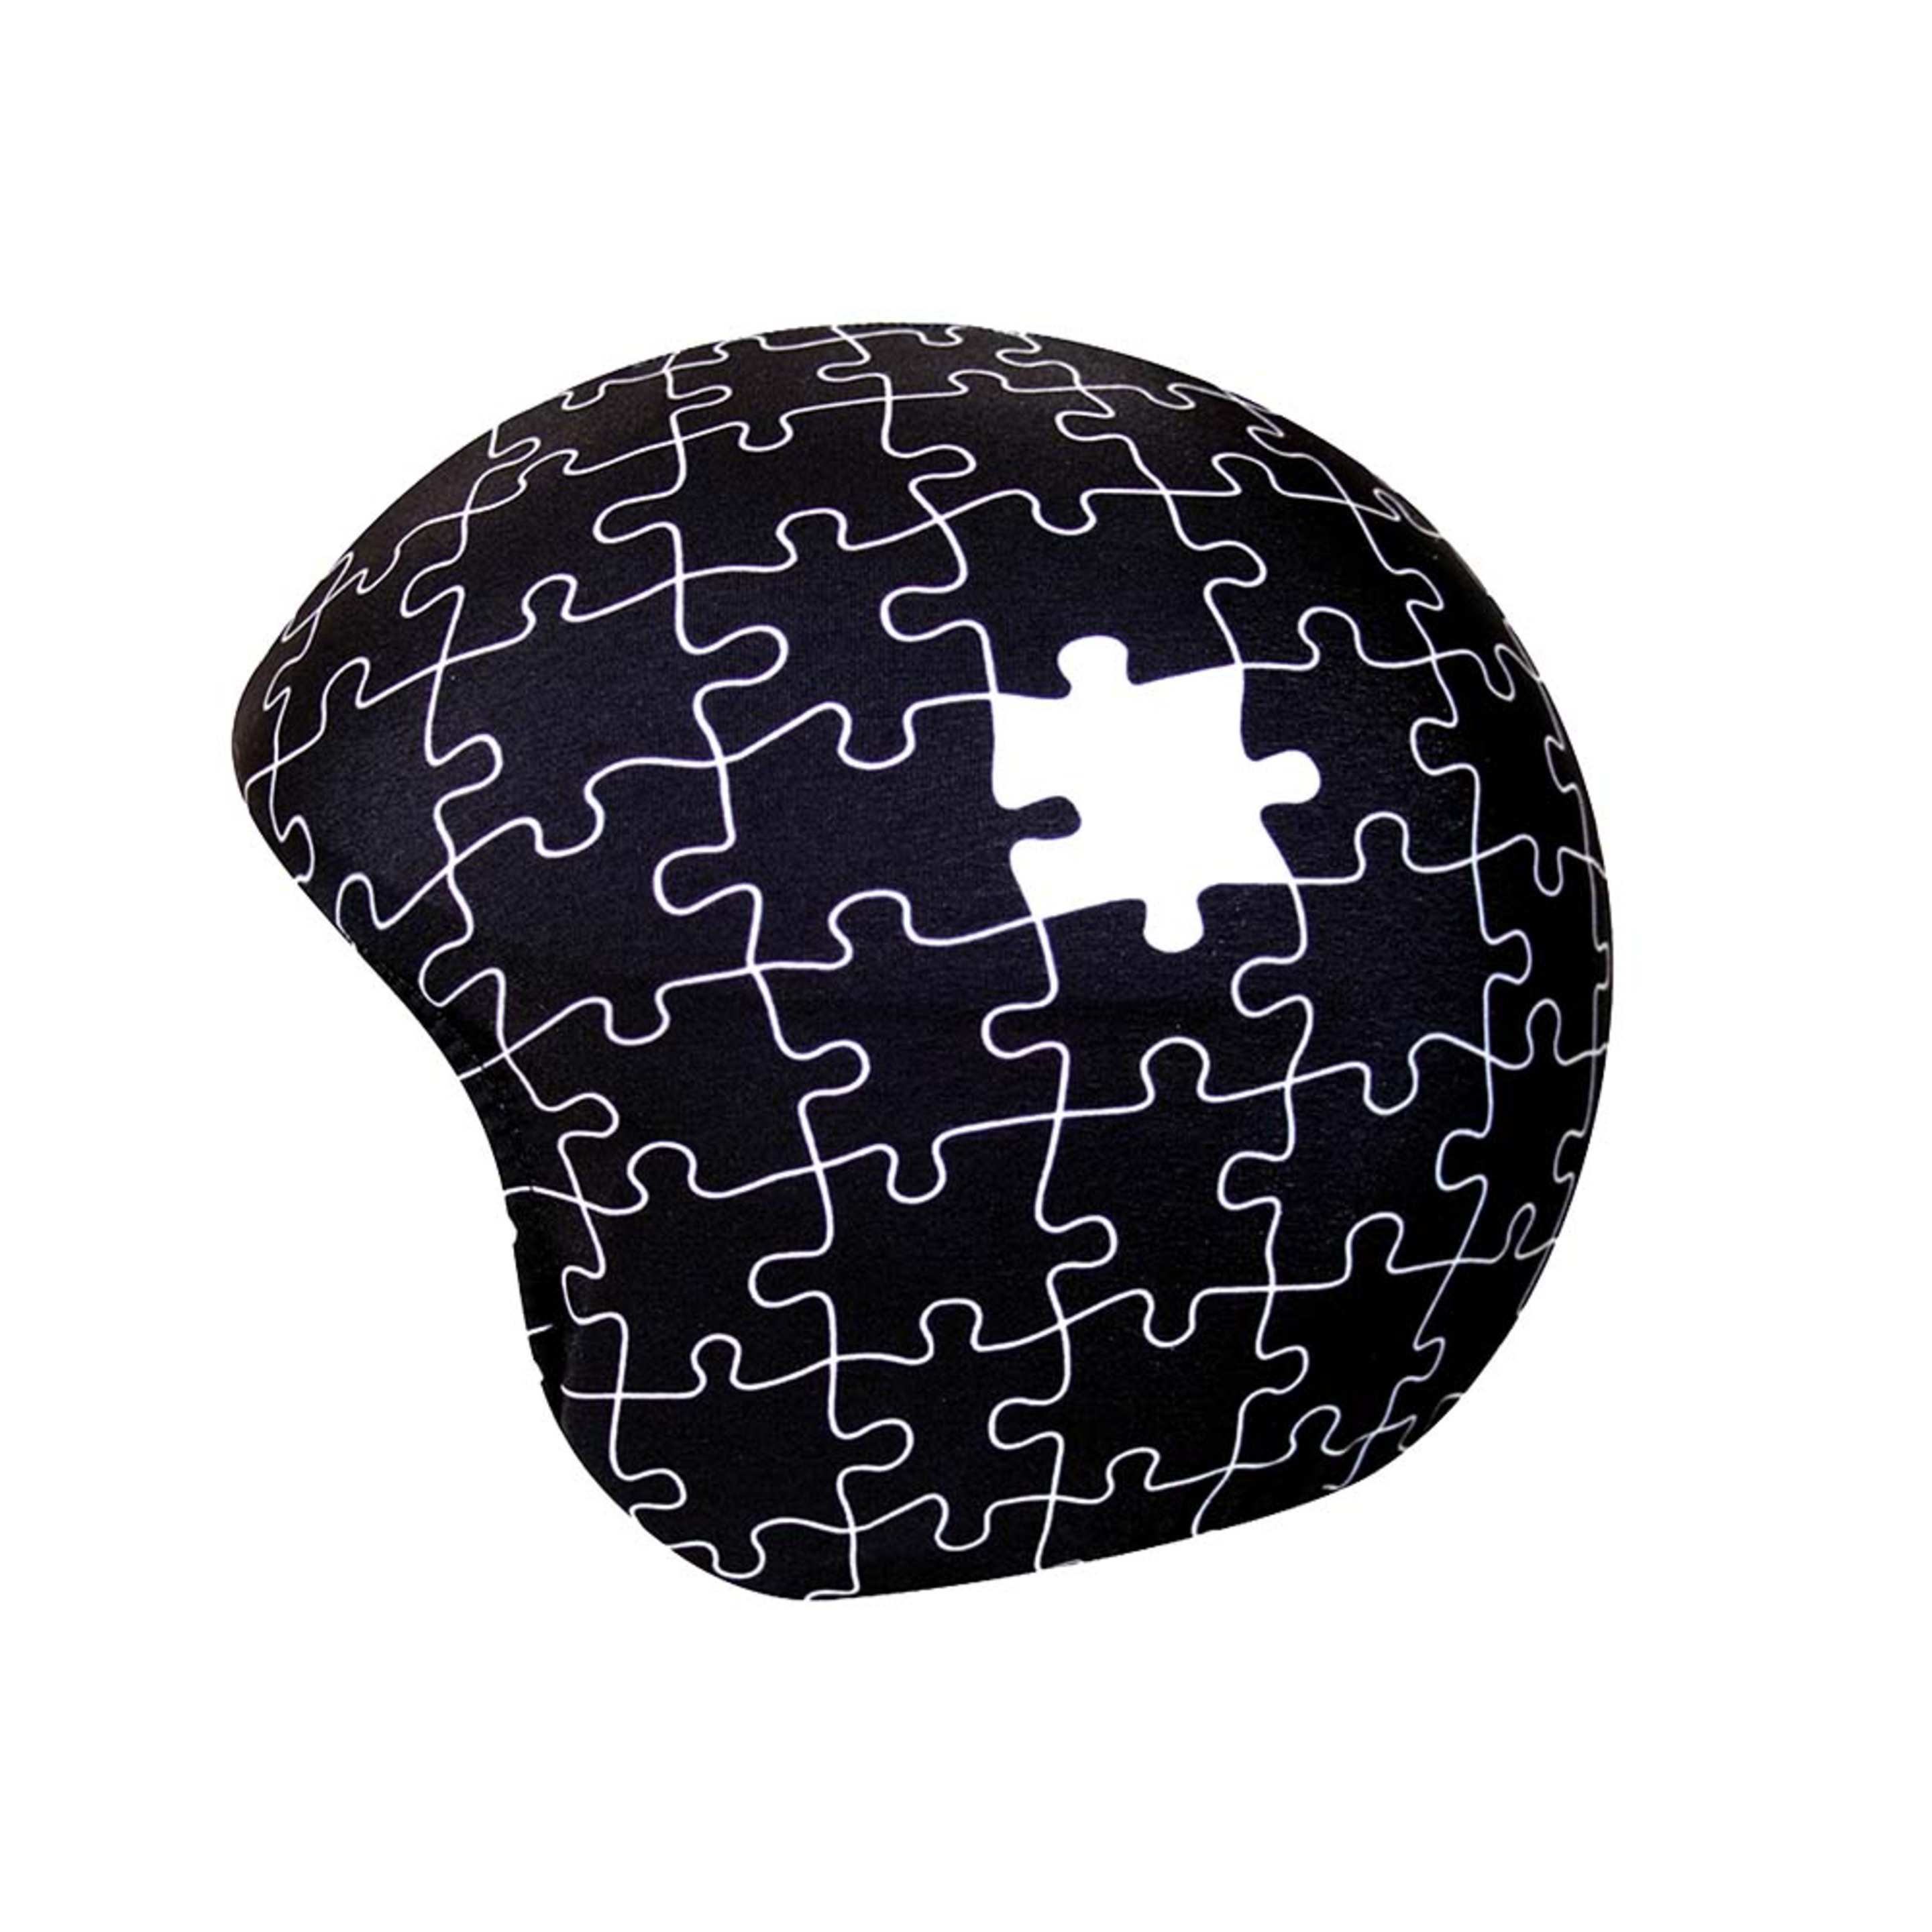 Funda Para Casco Multideporte Puzzle - Negro - Funda Con Estampado De Puzzle En Negro Y Blanco. Elegante Y Original. ¡cuidado!!! ¡falta Una Pieza!  MKP